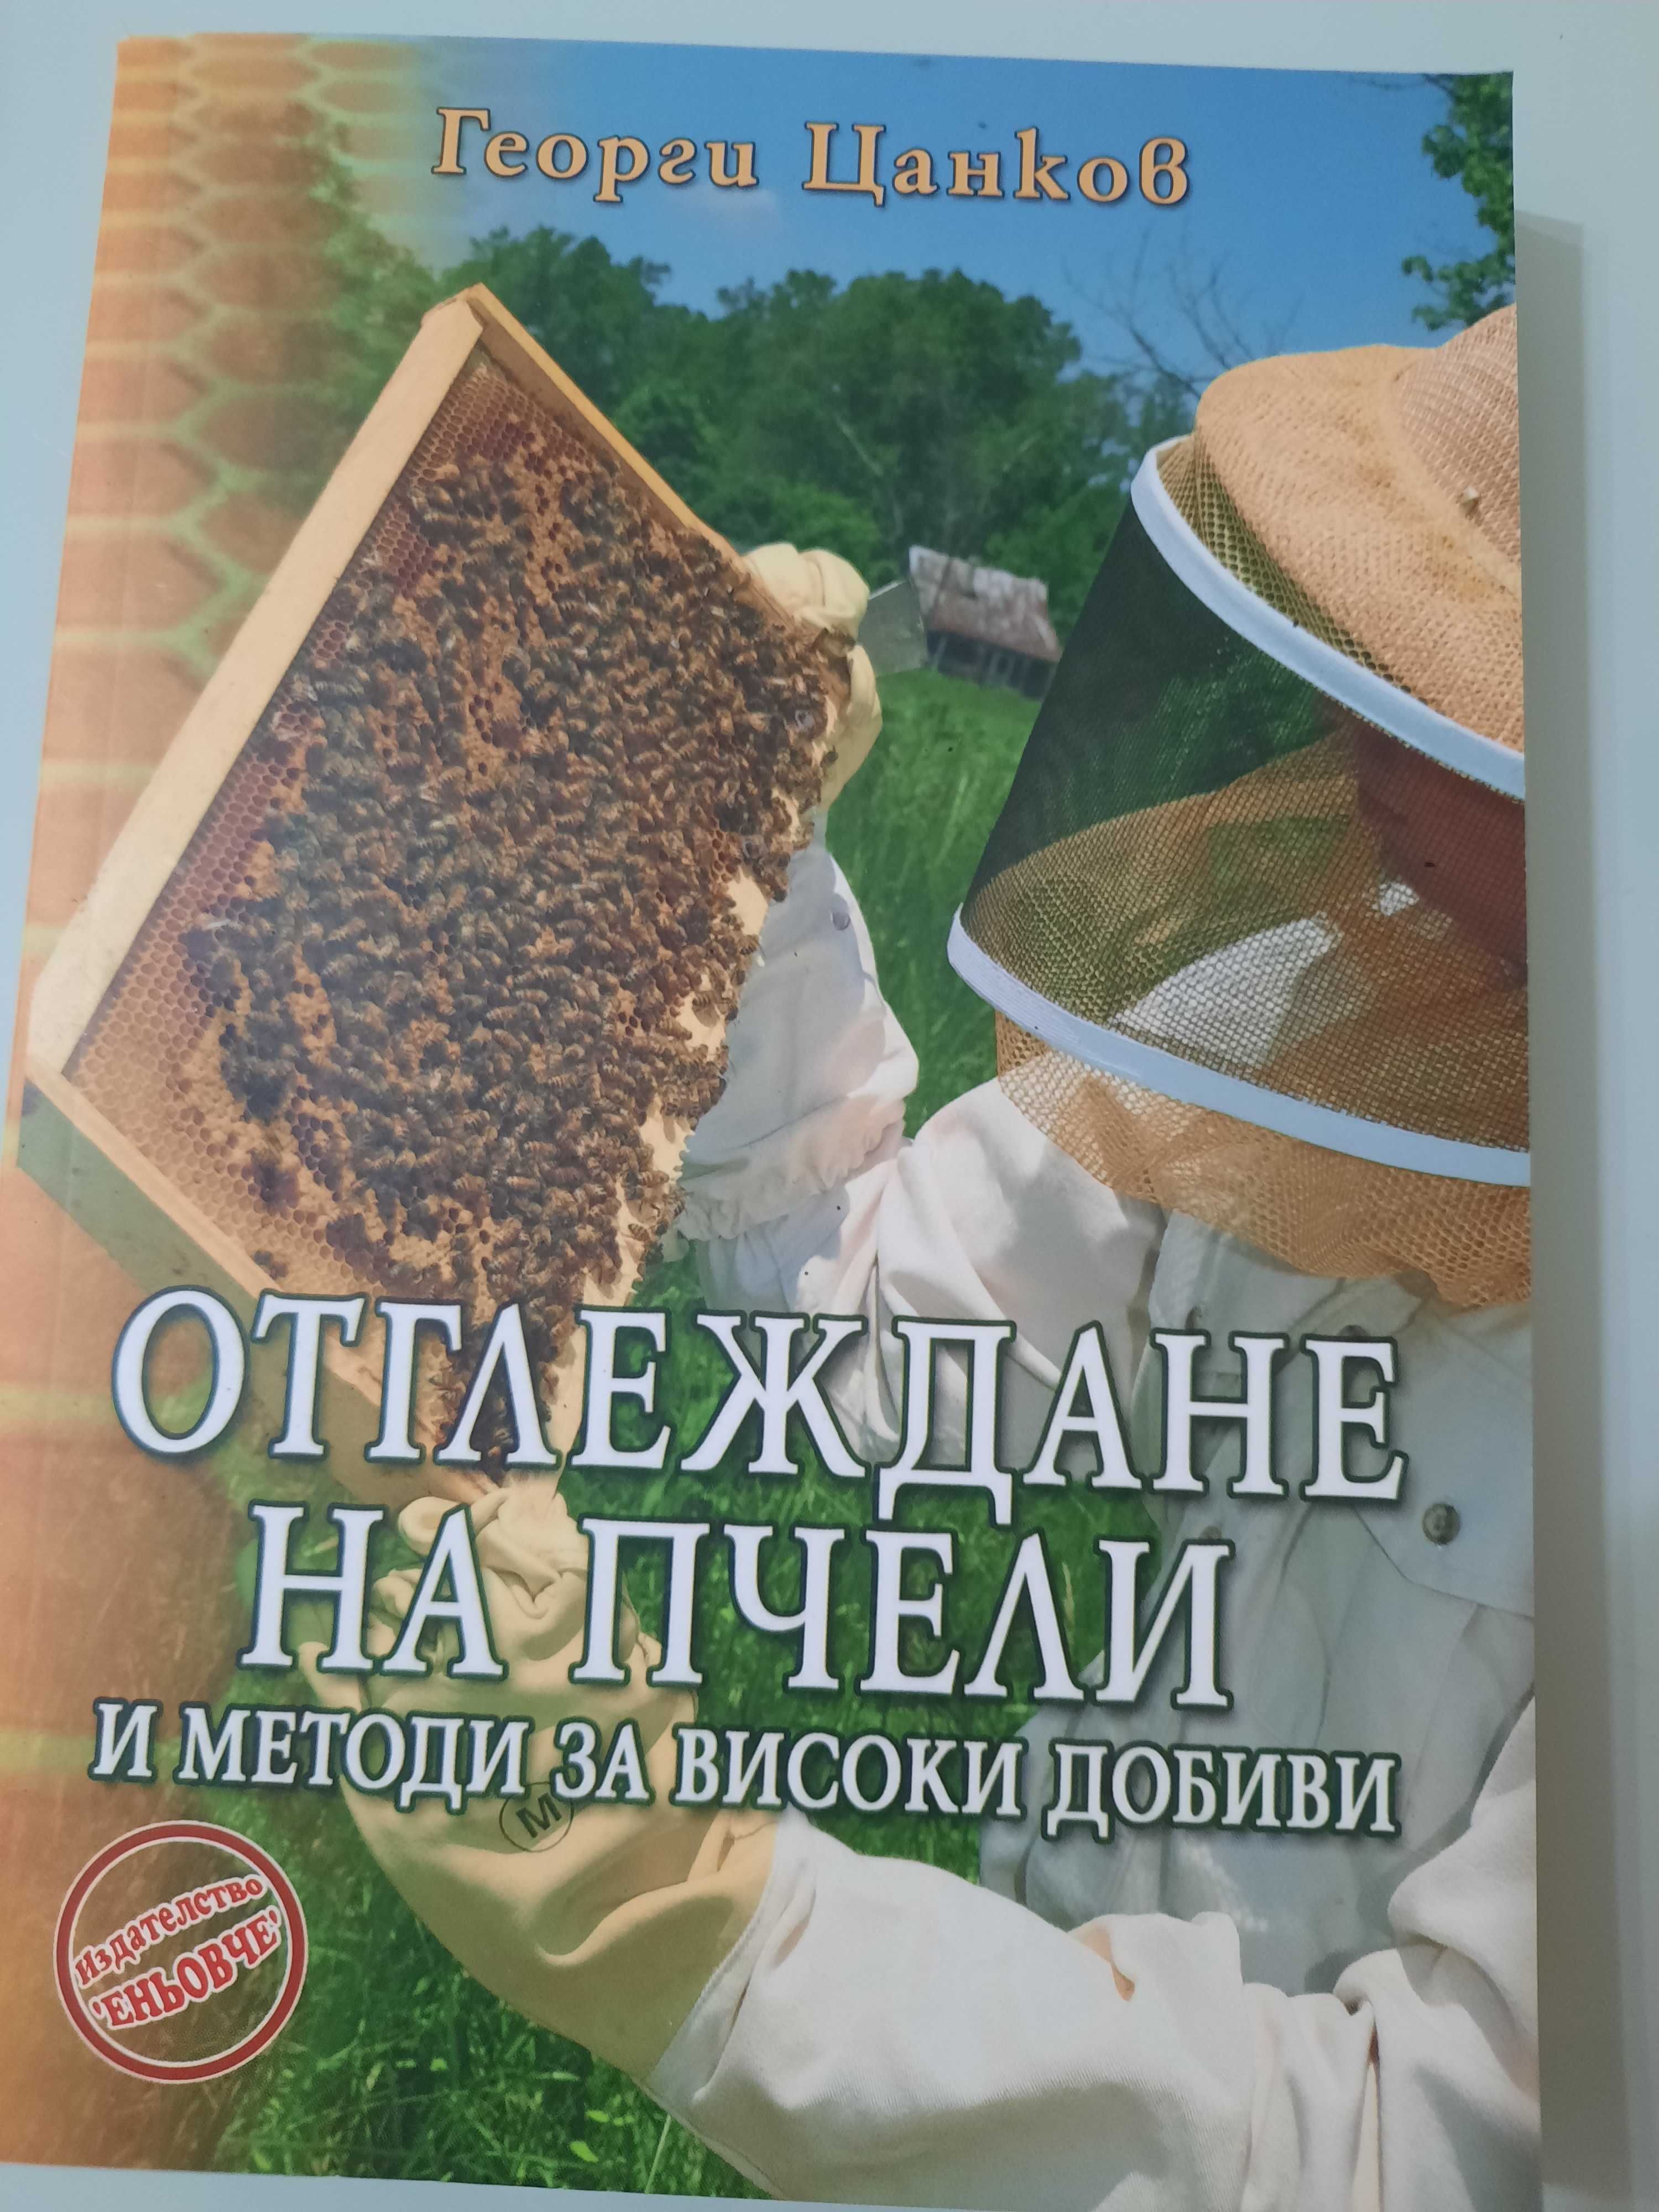 Отглеждане на пчели е митоди за високи добиви -Георги Цанков